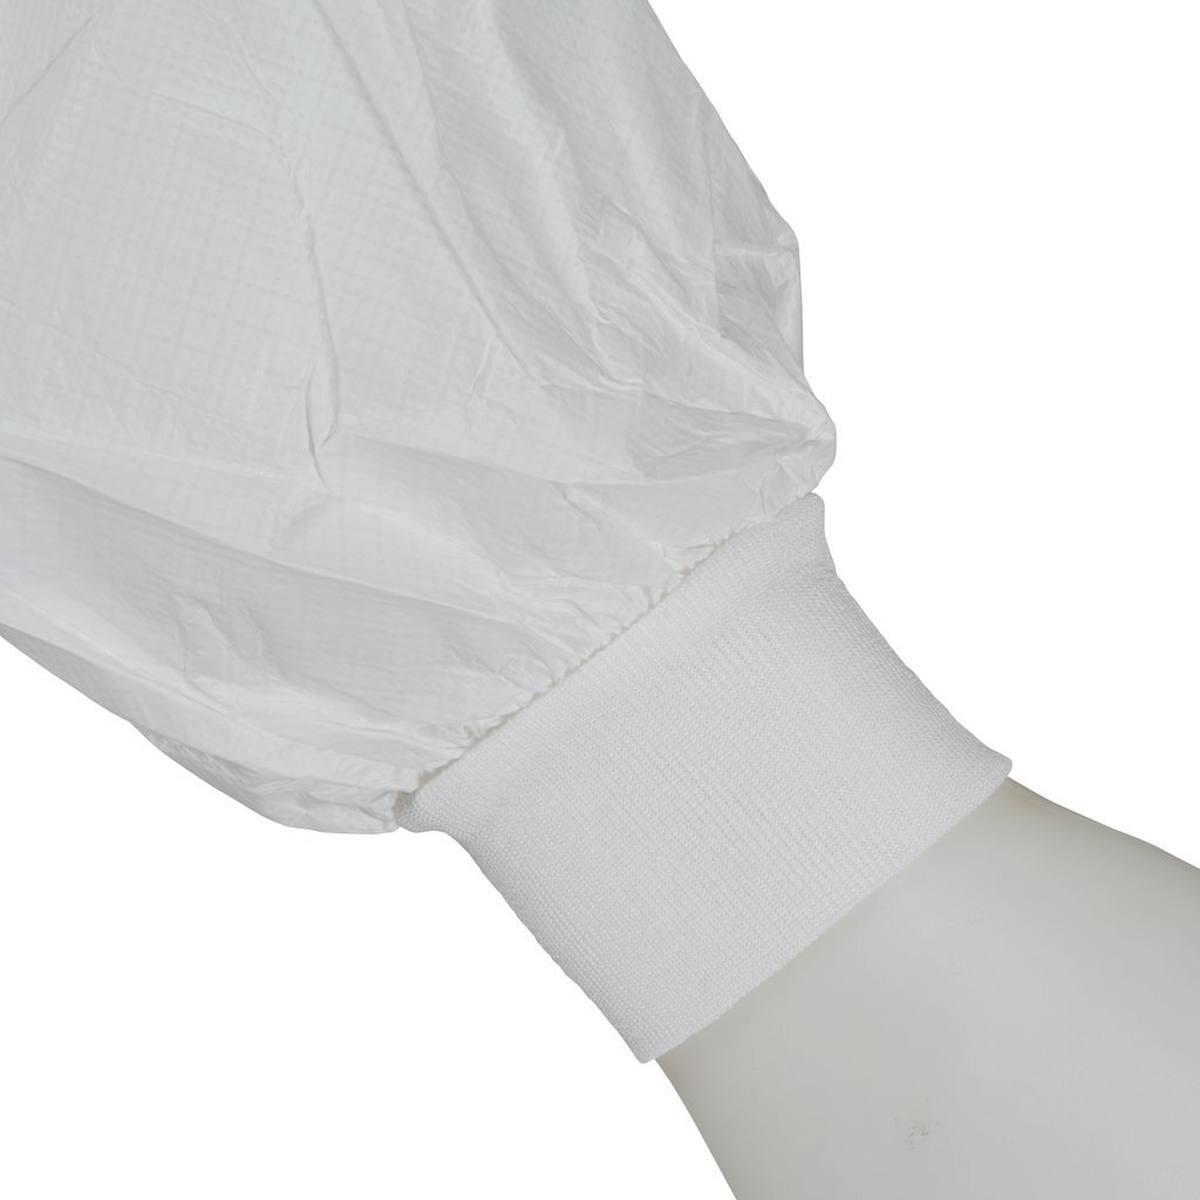 Cappotto 3M 4440, bianco, taglia L, particolarmente traspirante, molto leggero, con cerniera, polsini in maglia